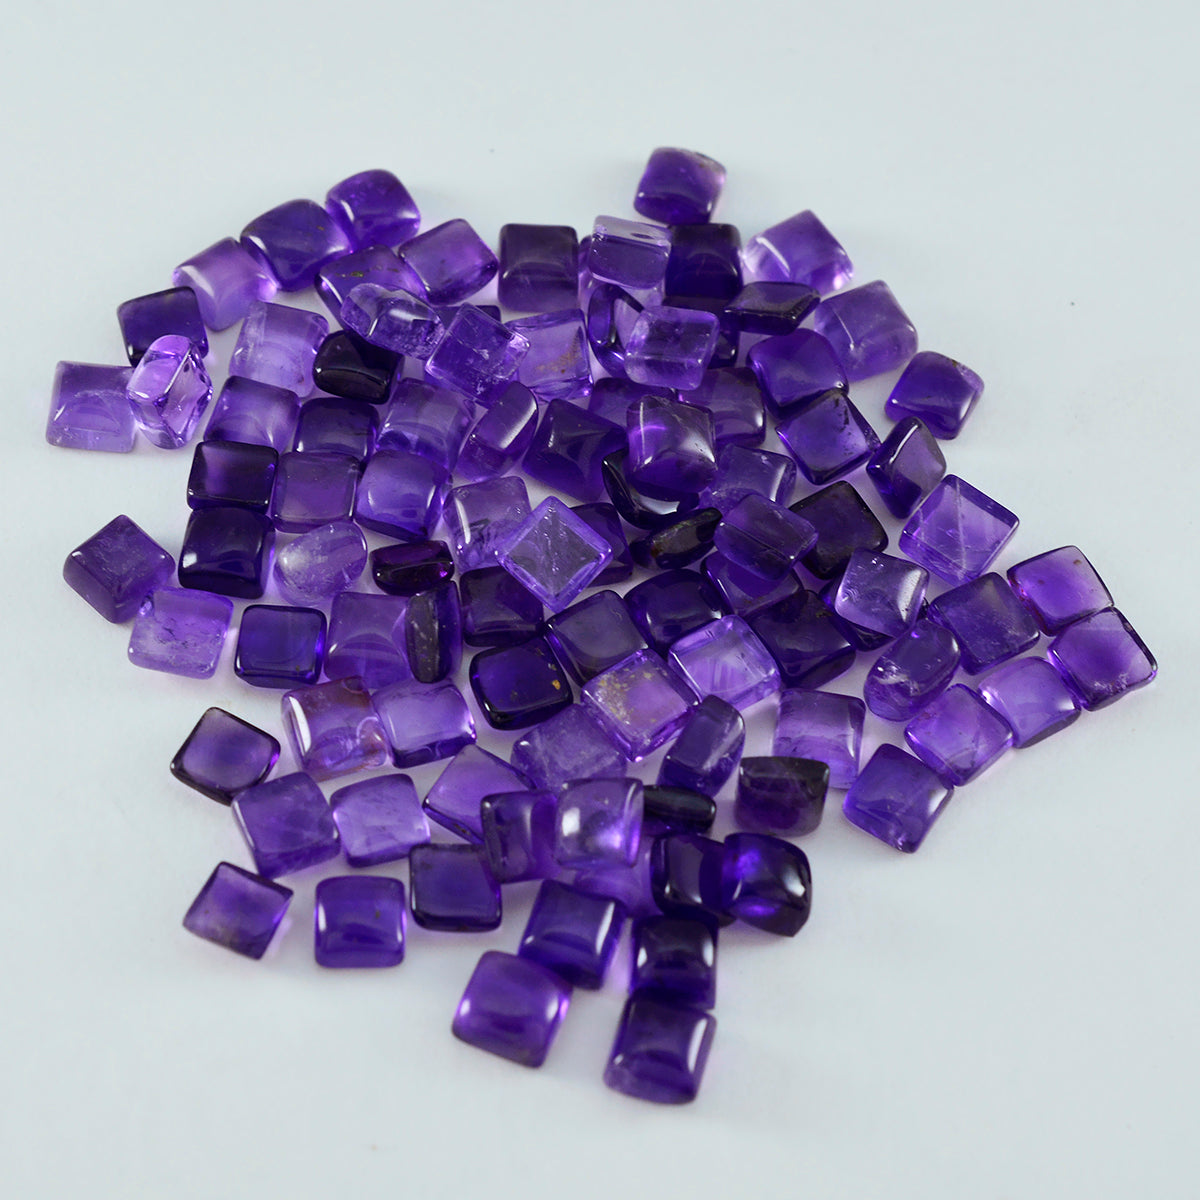 riyogems 1 шт. фиолетовый аметист кабошон 5x5 мм квадратной формы, драгоценный камень хорошего качества